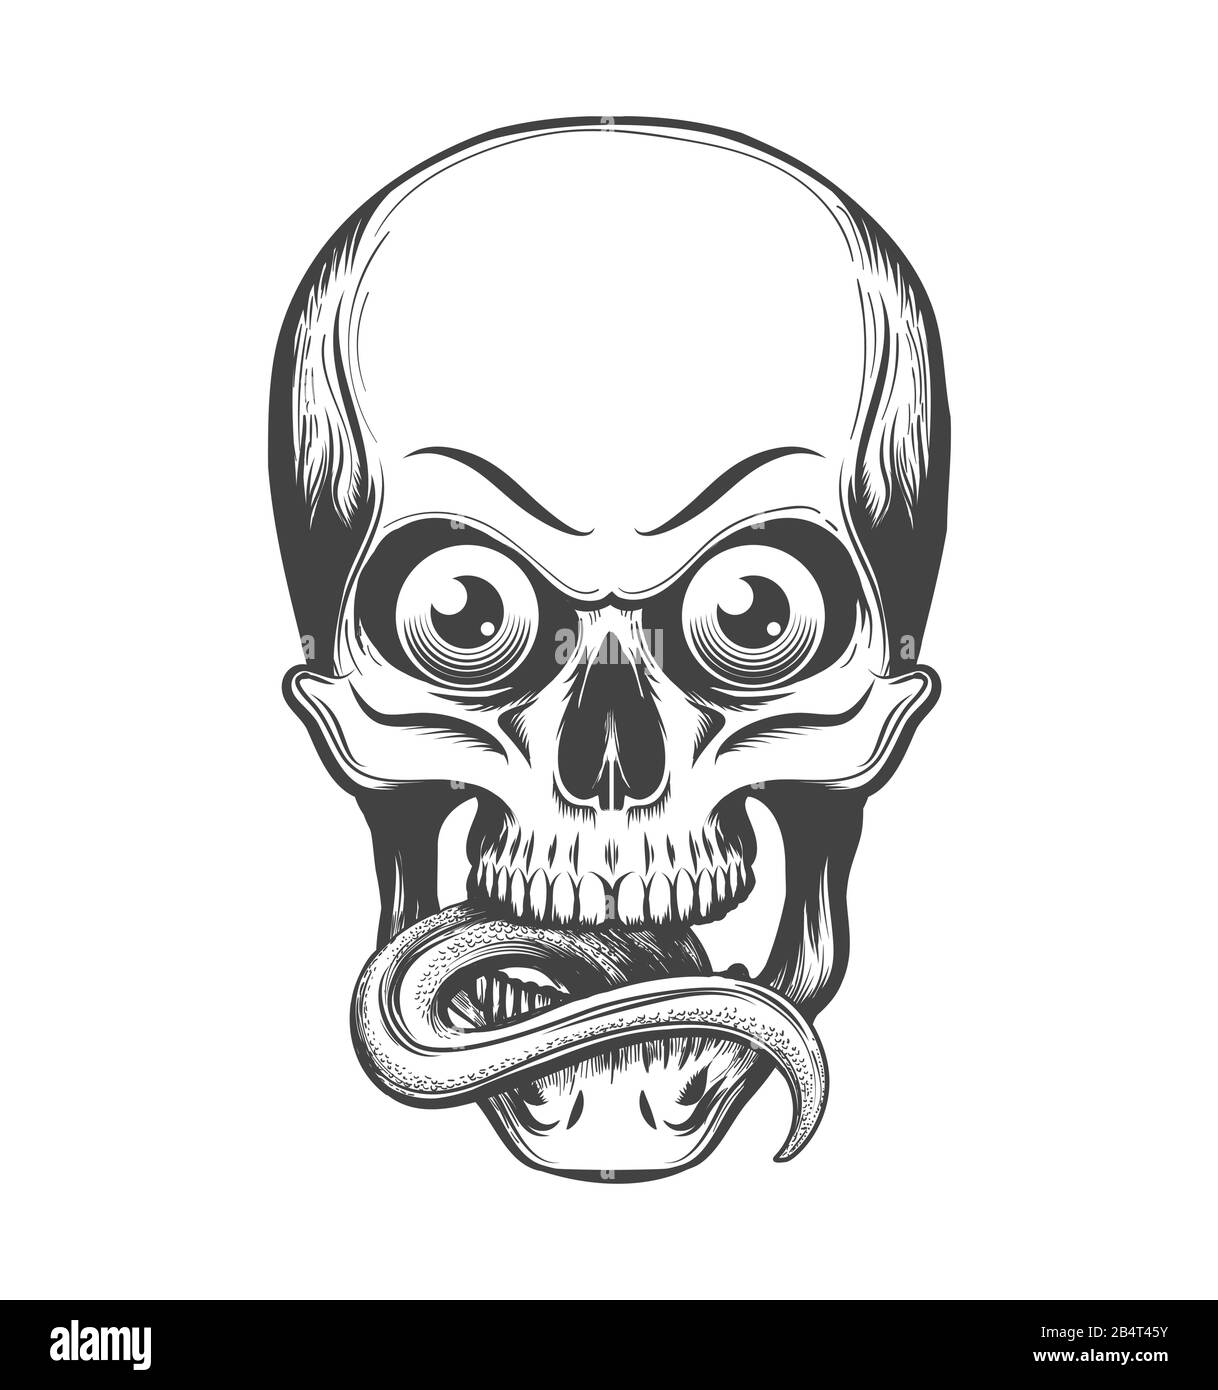 Cranio umano con occhi e lingua che si stacchino disegnato in stile tatuaggio. Illustrazione del vettore. Illustrazione Vettoriale